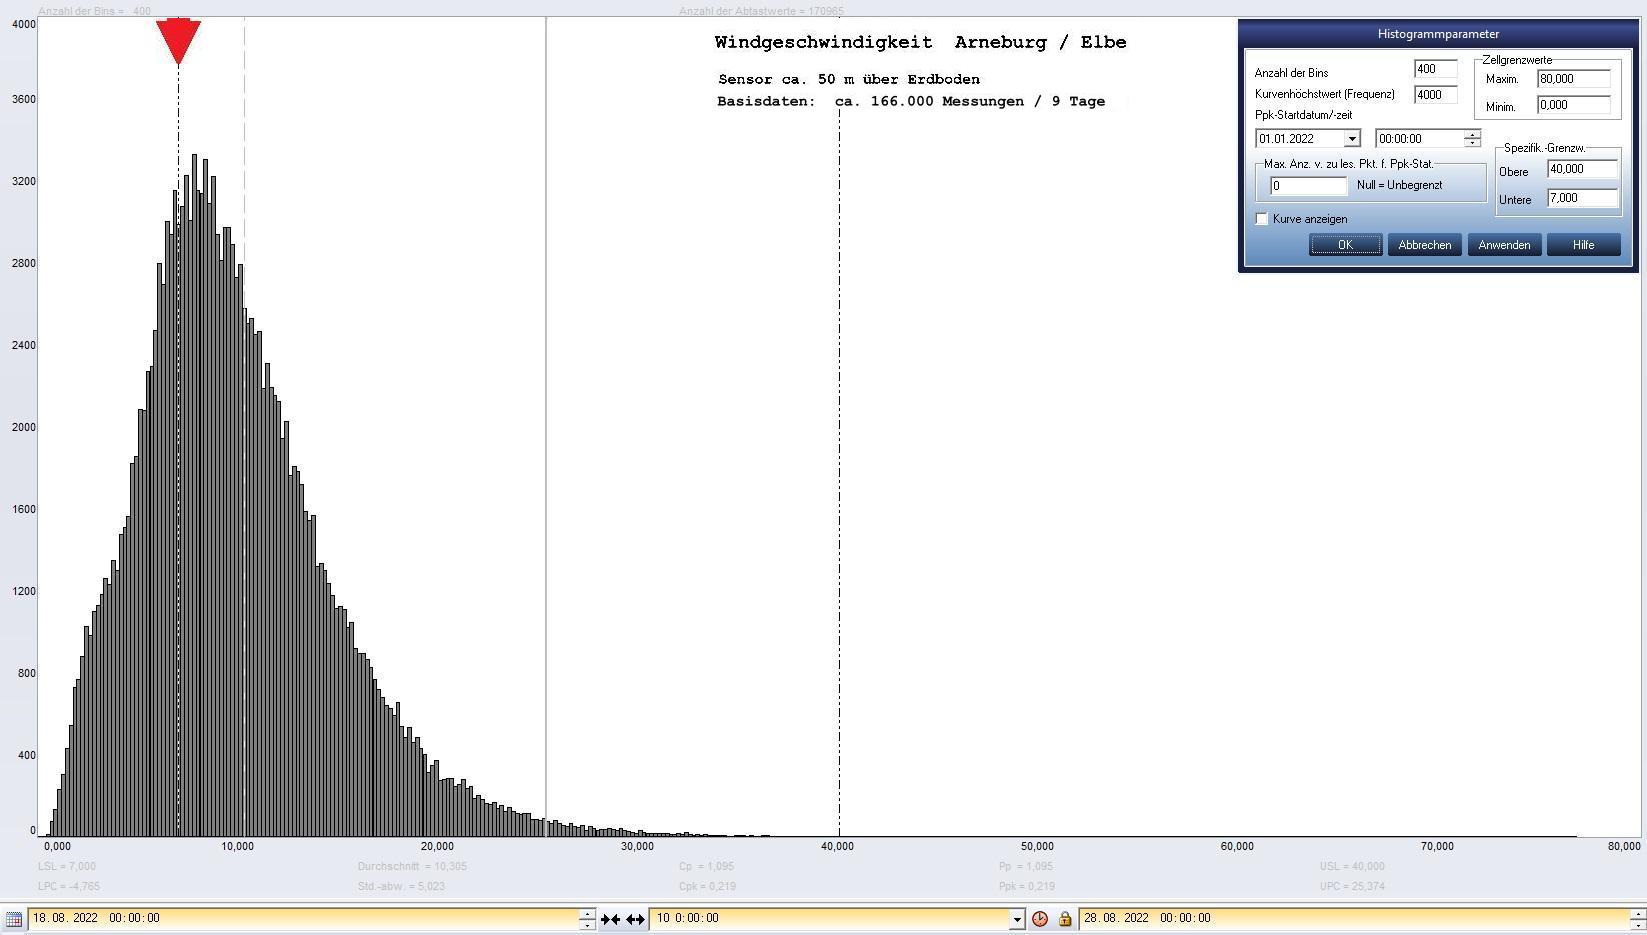 Arneburg 9 Tage Histogramm Winddaten, ab 18.08.2022 
  Sensor auf Gebude, ca. 50 m ber Erdboden, Basis: 5s-Aufzeichnung